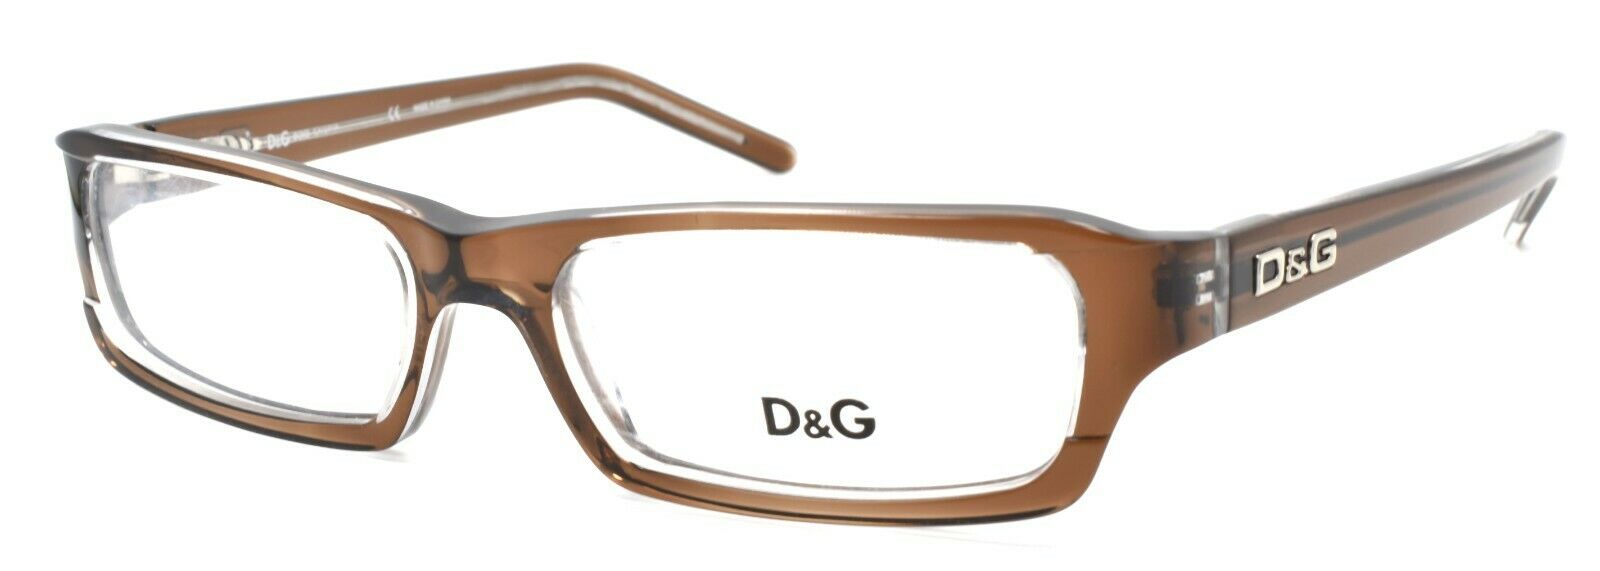 1-Dolce & Gabbana D&G 1144 758 Women's Eyeglasses Frames 52-16-140 Brown / Clear-654329862322-IKSpecs